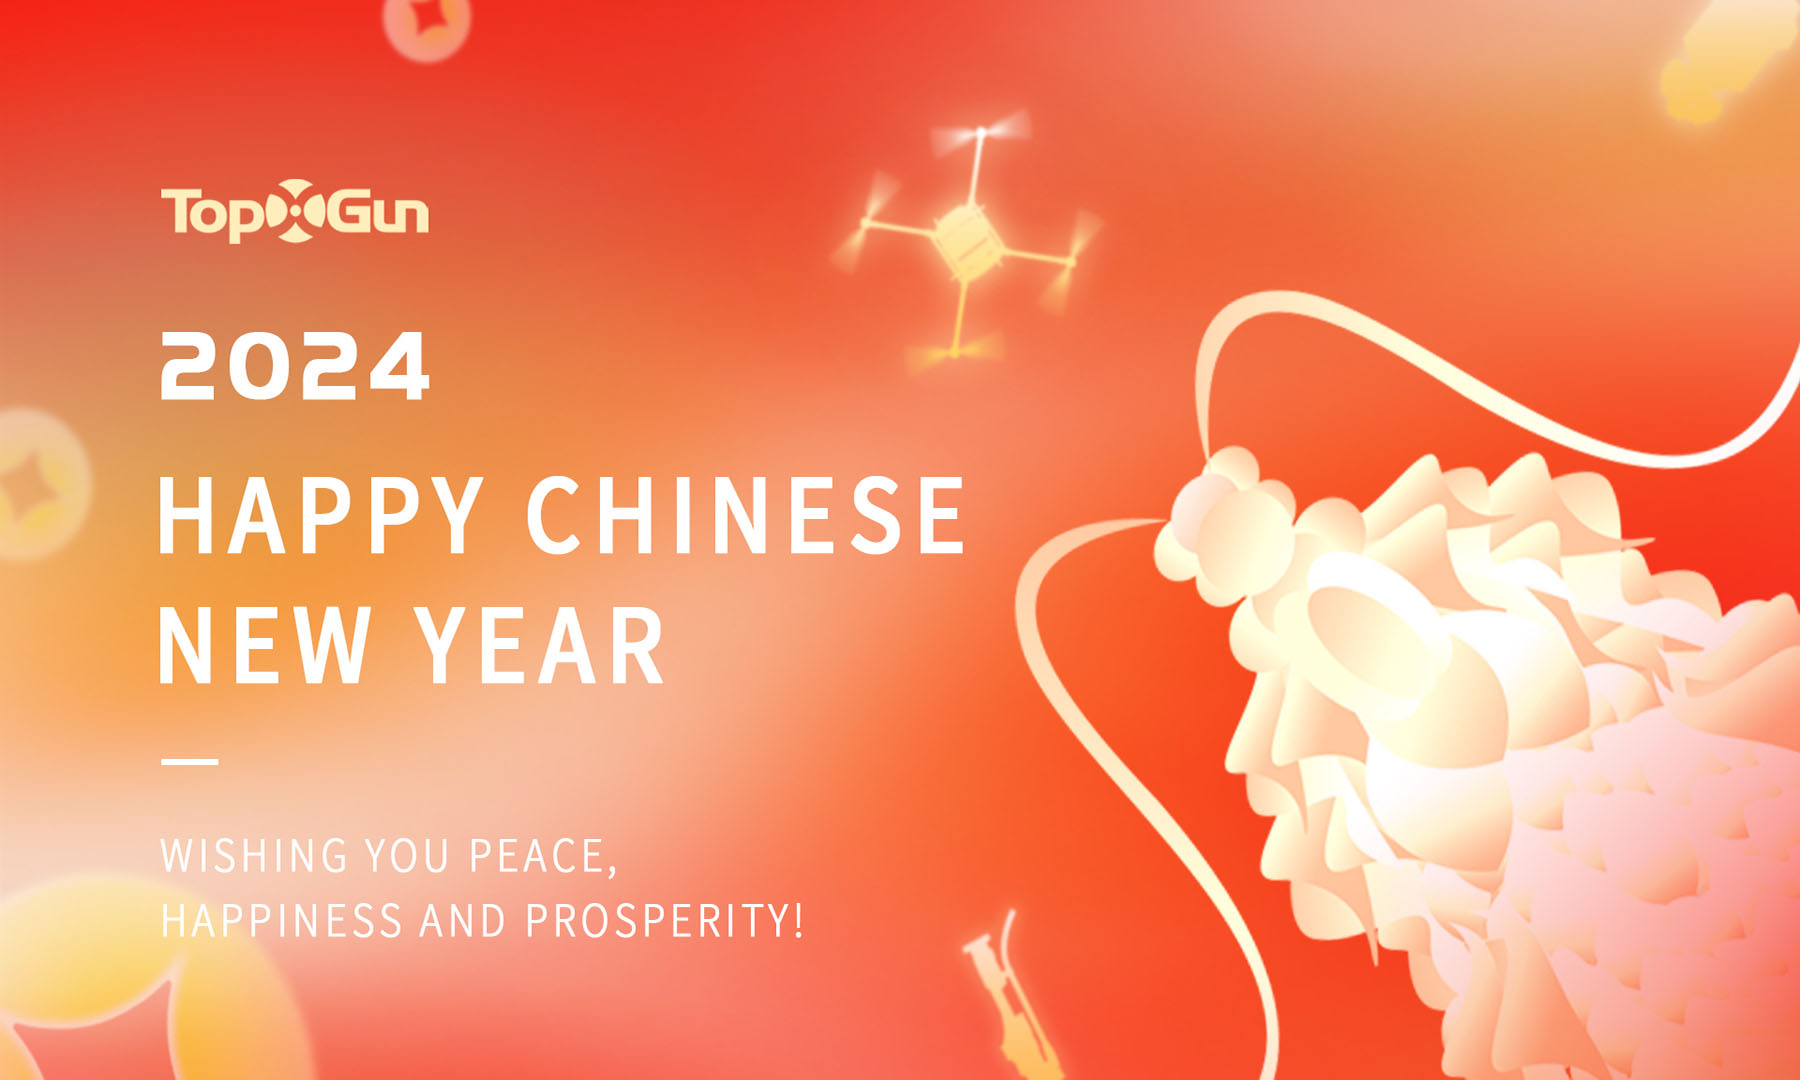 Отпразднуйте Китайский Новый год 2024 вместе с Topxgun